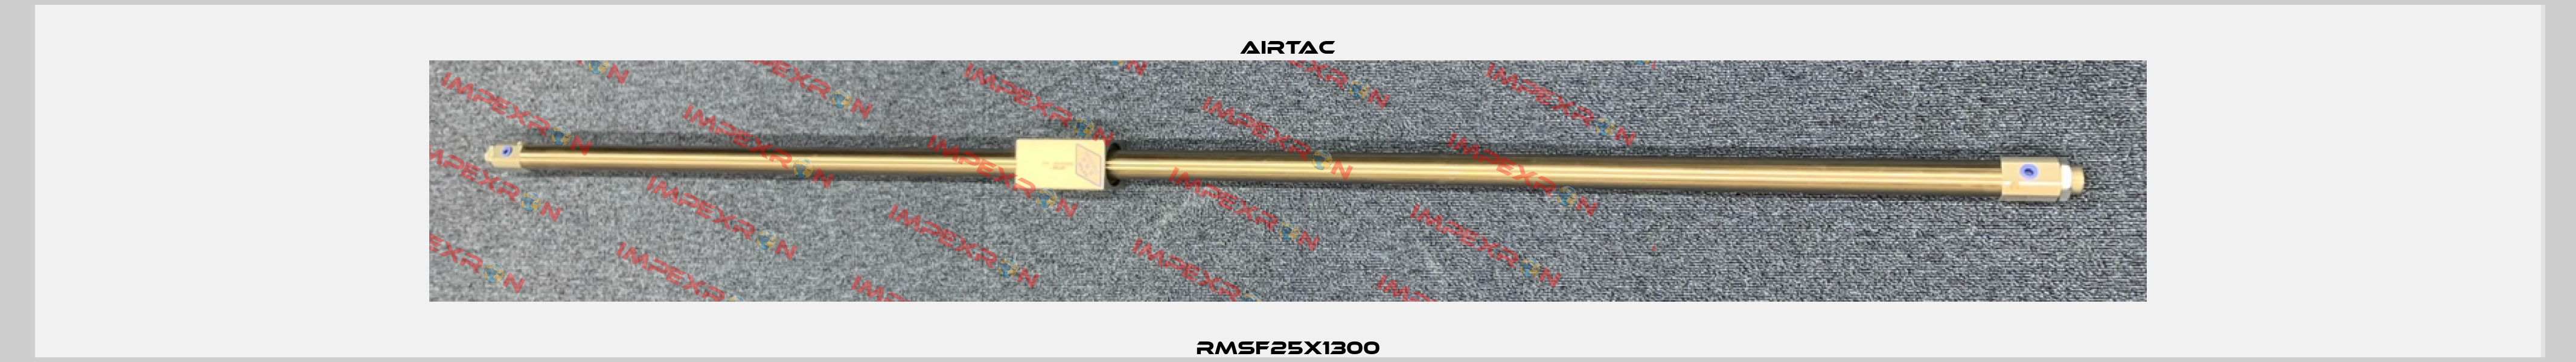 RMSF25X1300 Airtac